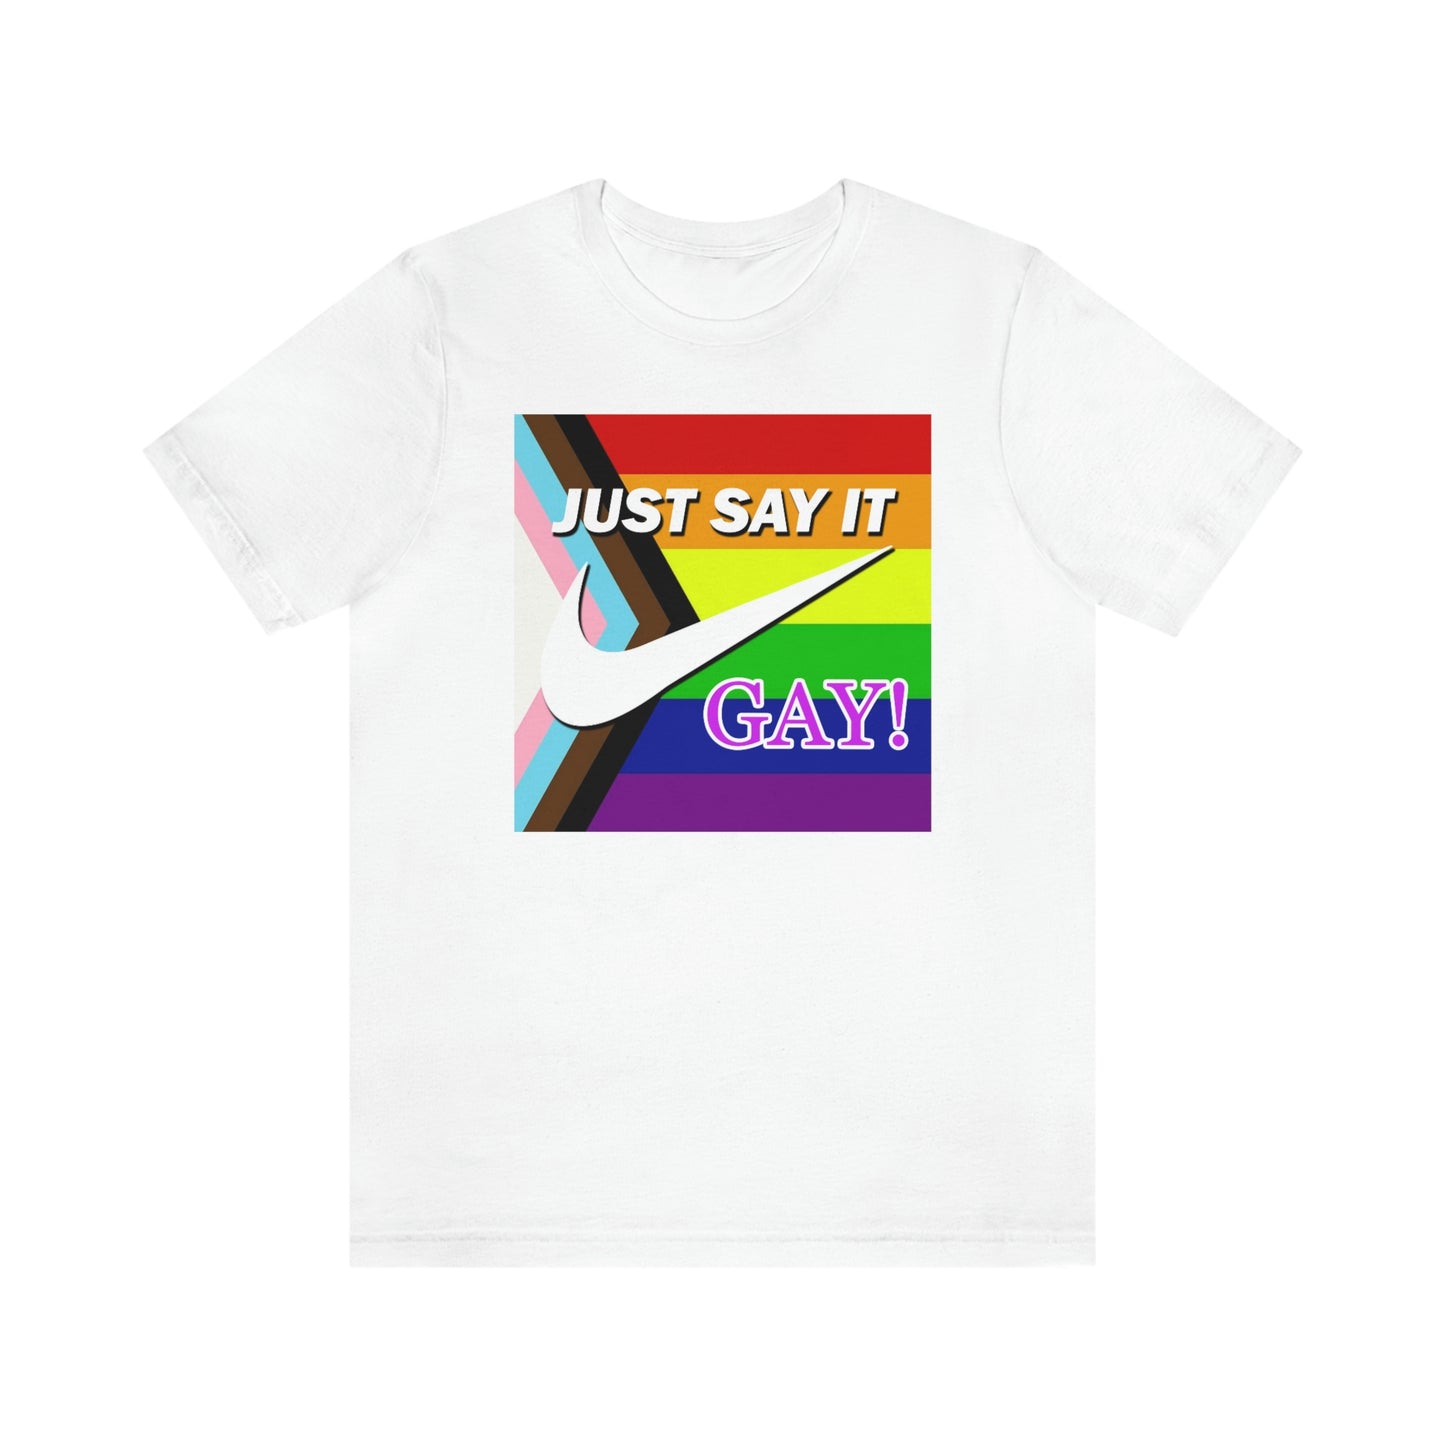 Sólo dilo - Camiseta unisex para adultos GAY